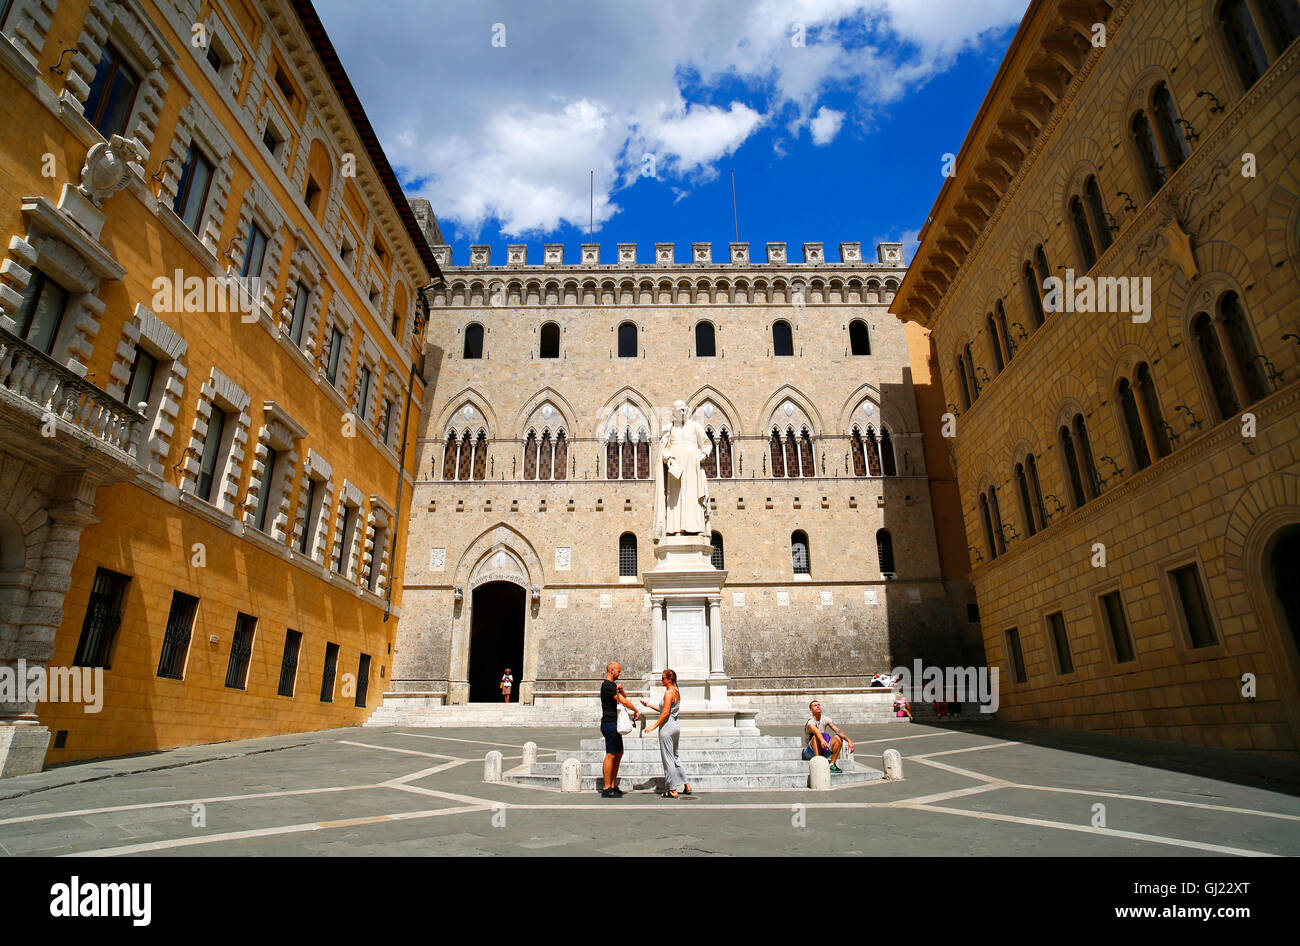 Banca Monte dei Paschi di Siena sede sulla piazza Salimbeni a Siena, Italia  Foto stock - Alamy